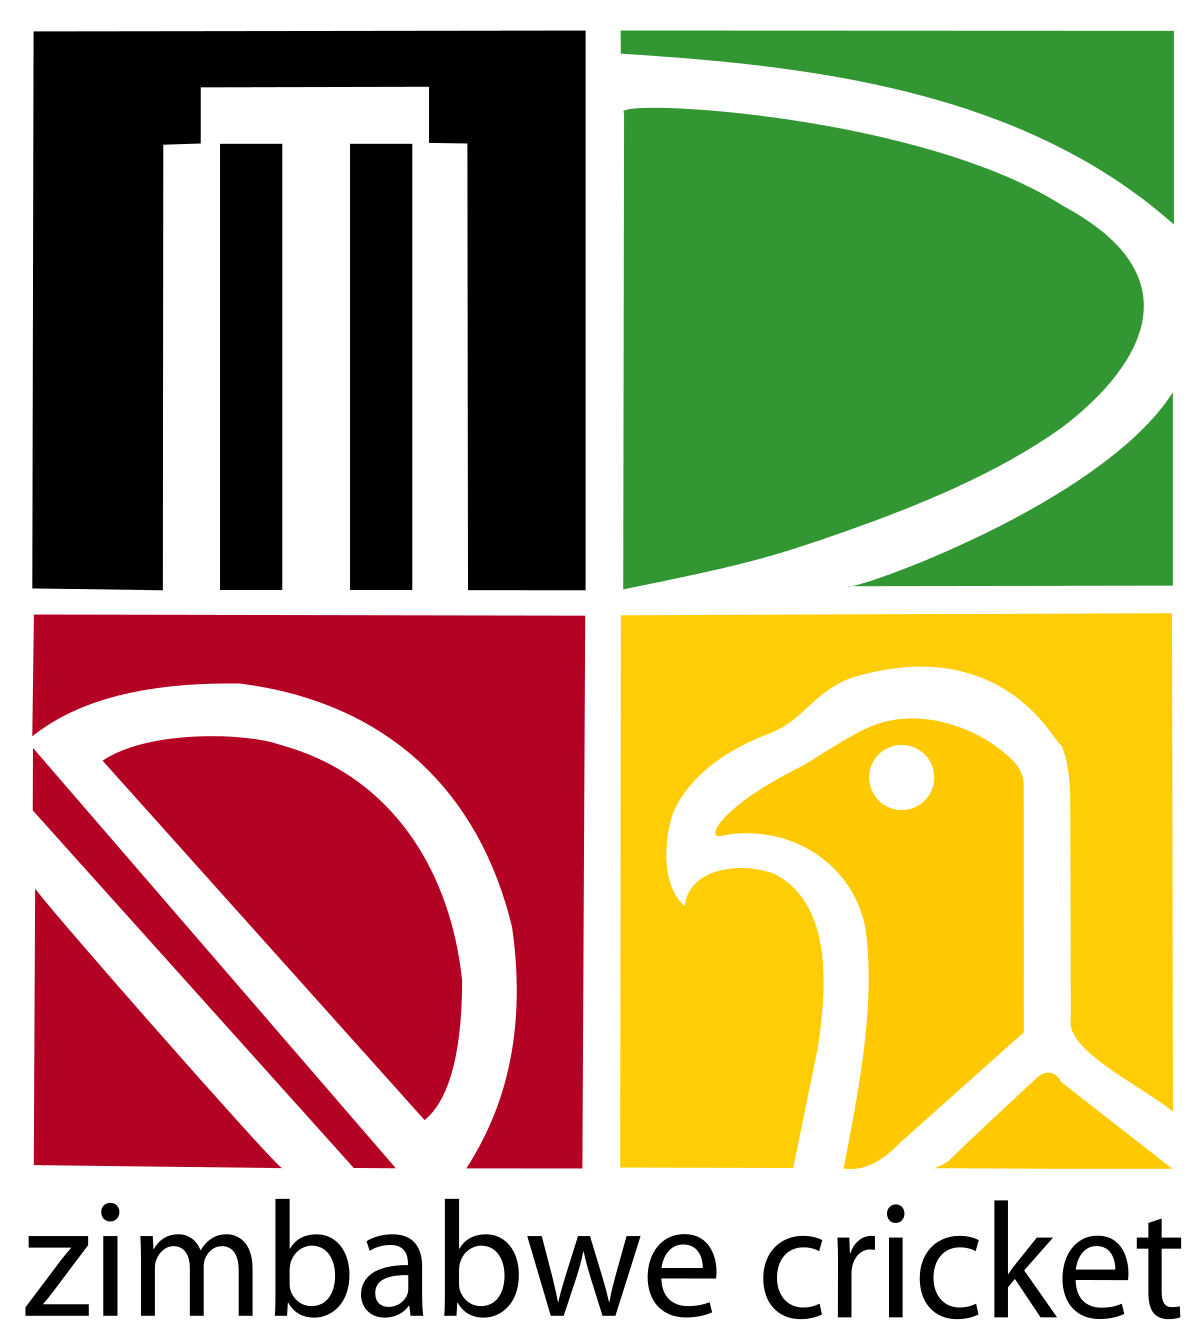 Zimbabwe Logo - Zimbabwe national cricket team